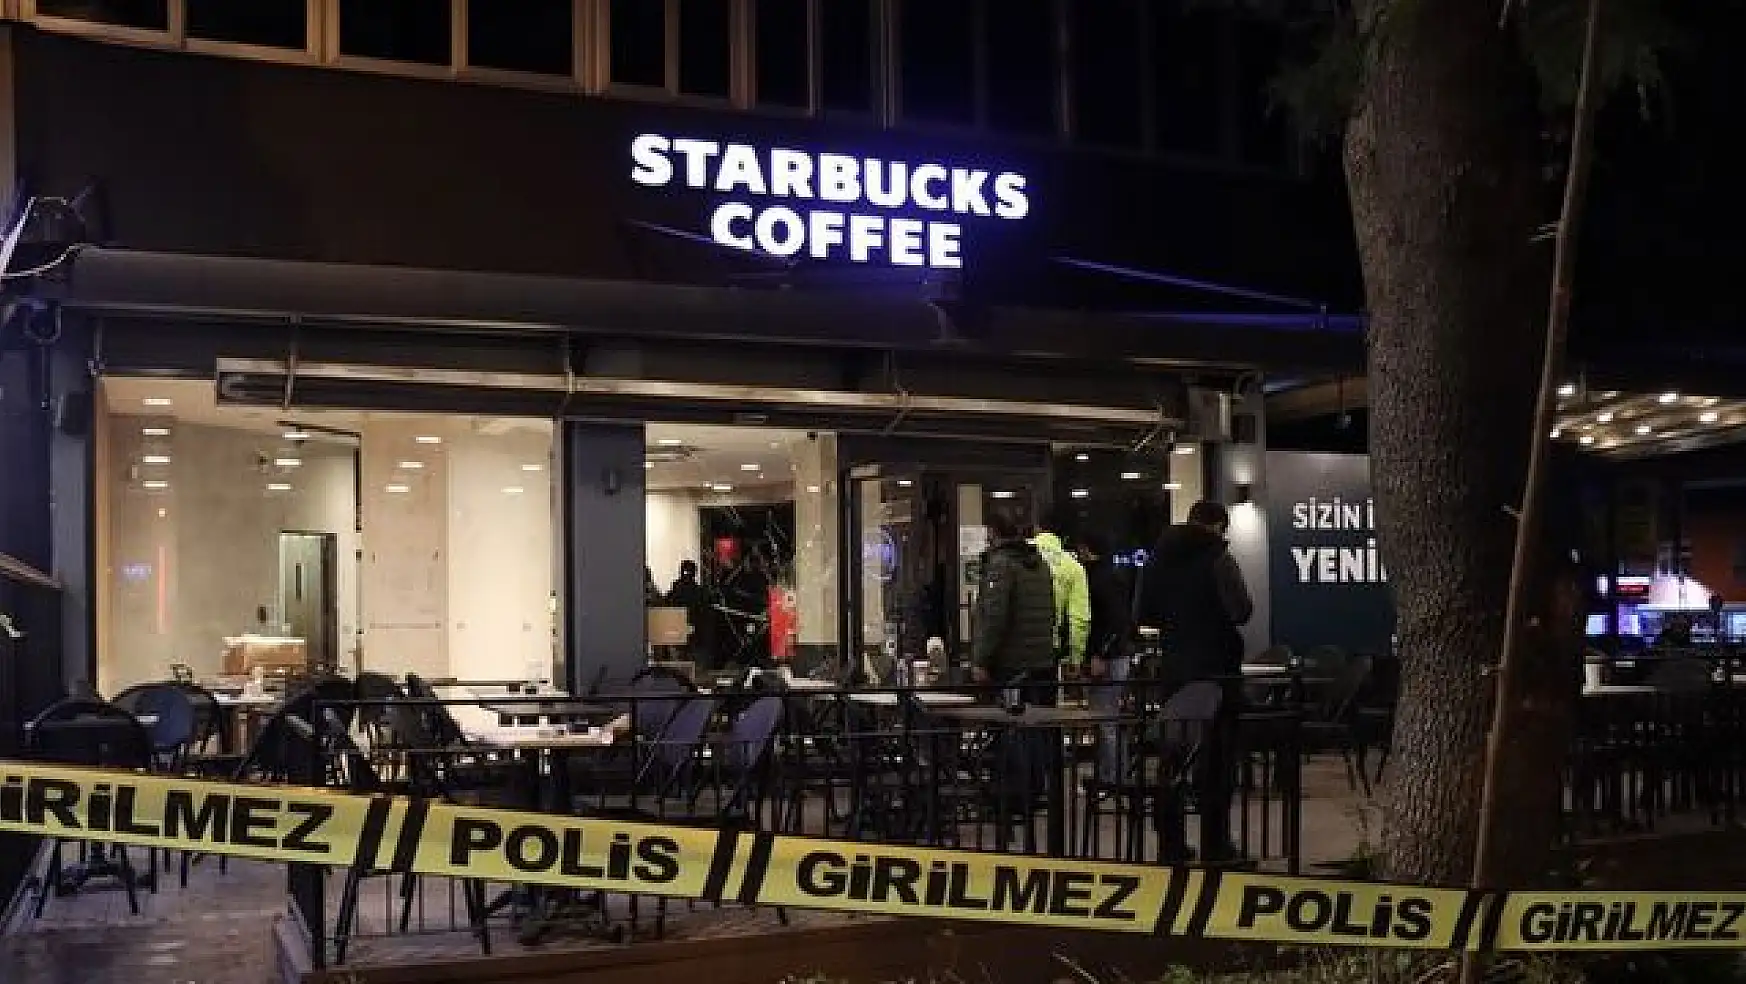 Adana'da Starbucks şubesine silahlı saldırı!